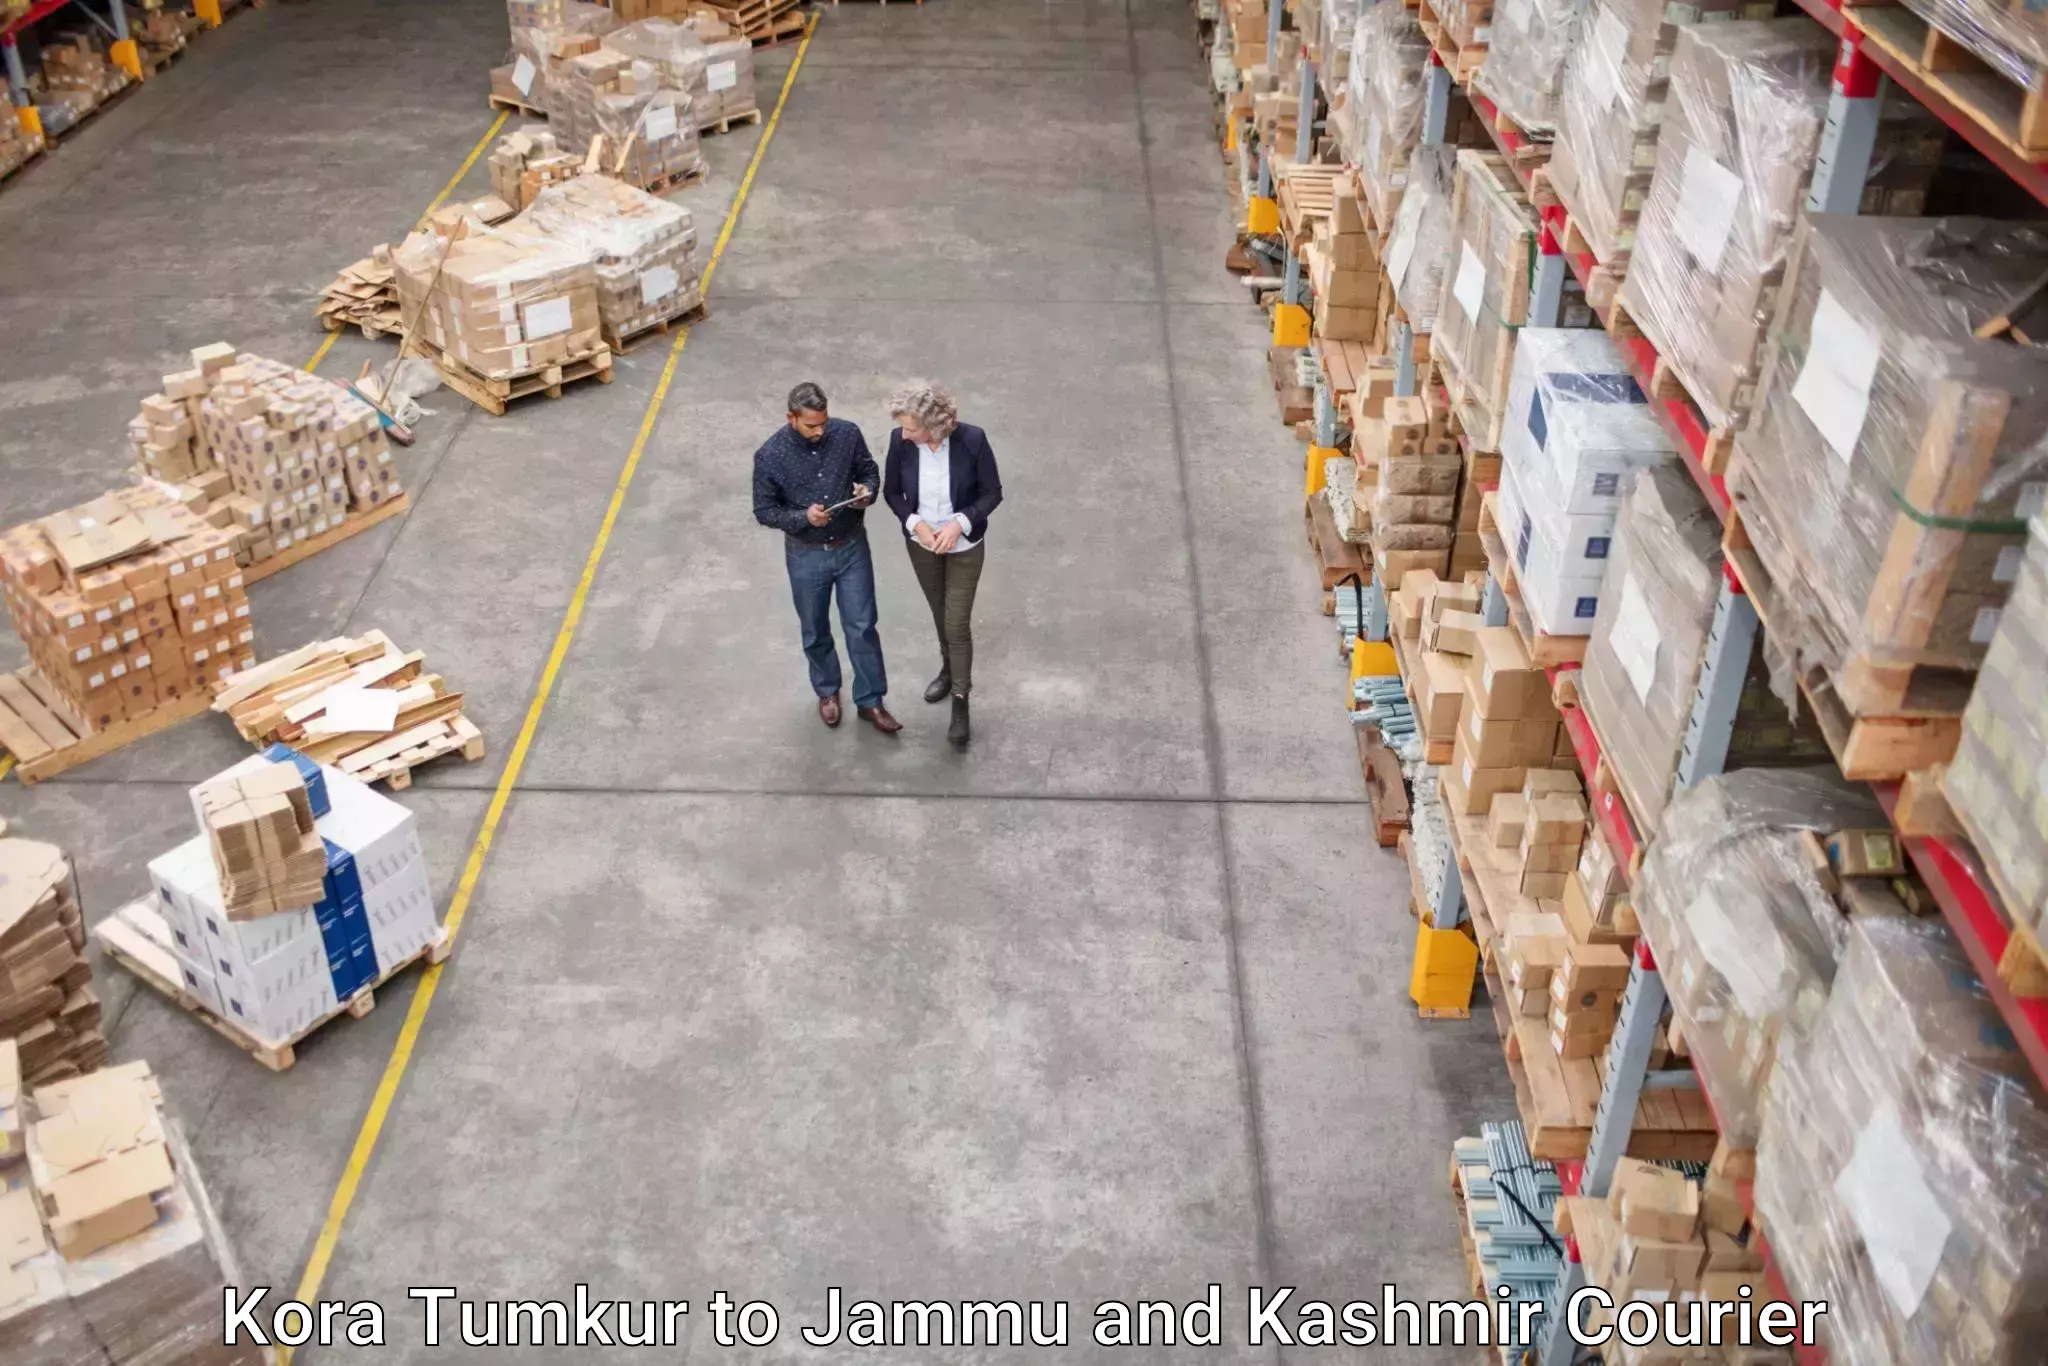 Next-day freight services Kora Tumkur to Srinagar Kashmir